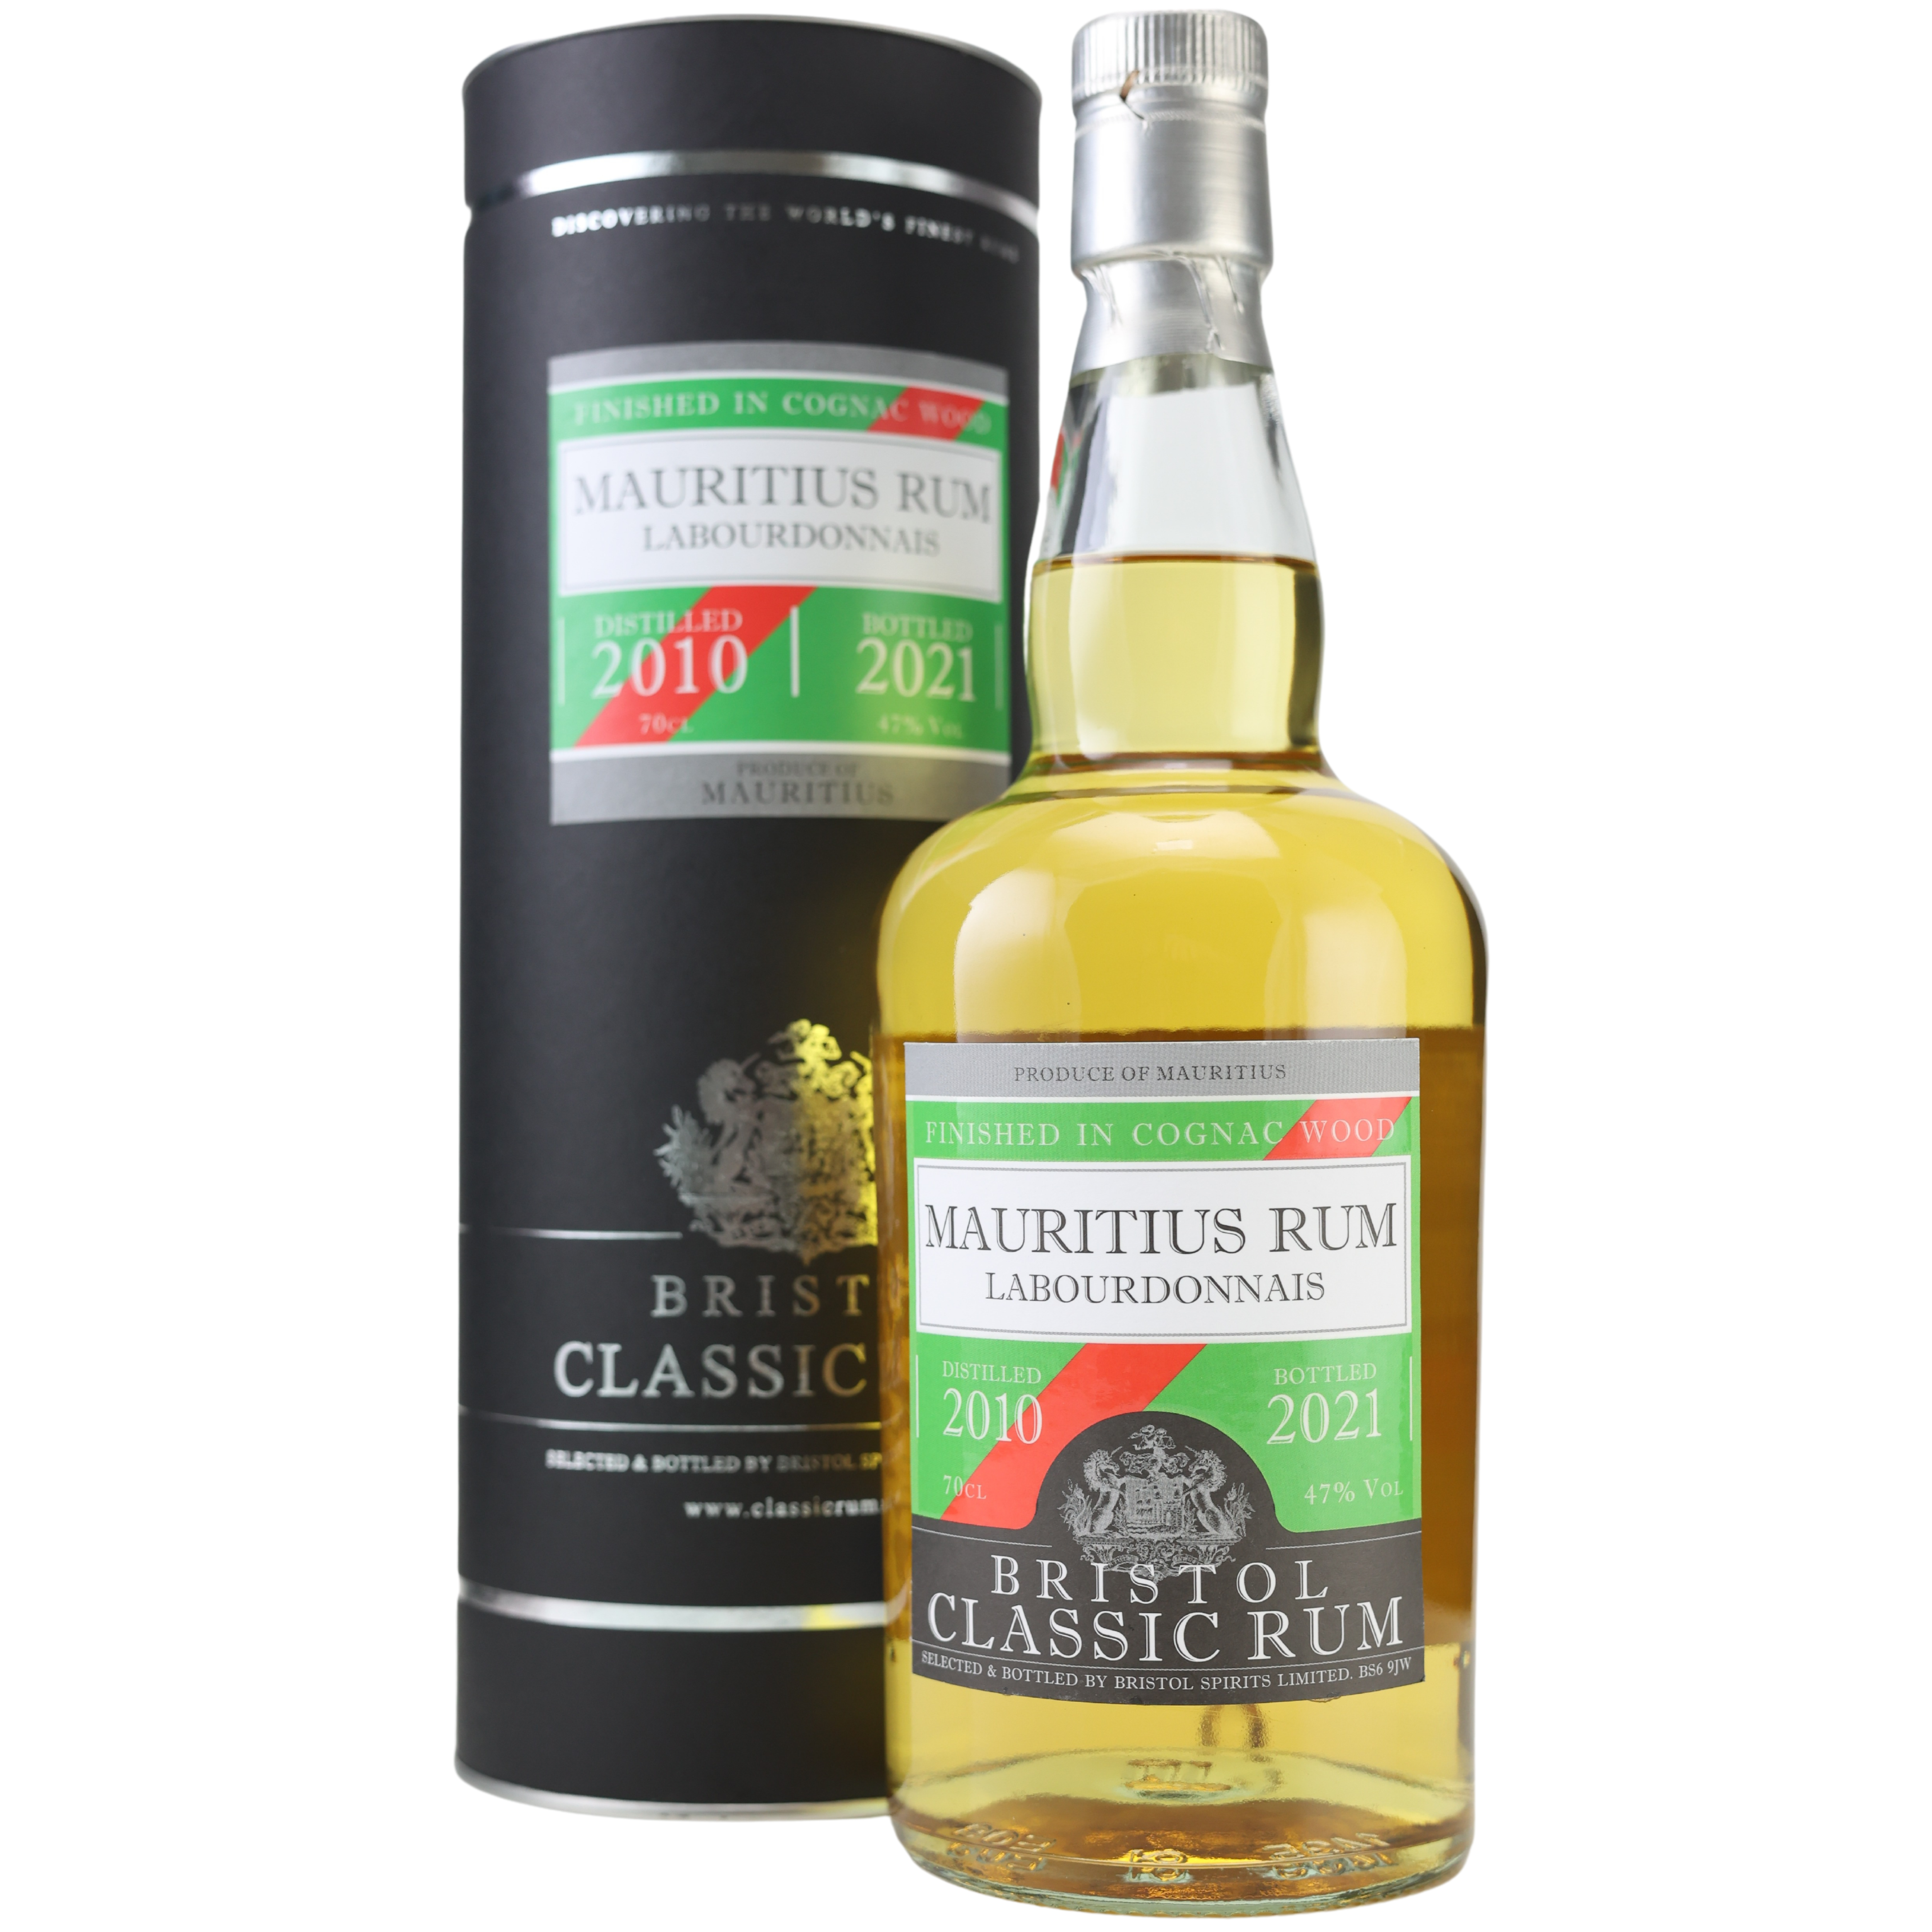 Bristol Mauritius Labourdonnais Rum 2010/2021 Cognac Finish 47% 0,7l